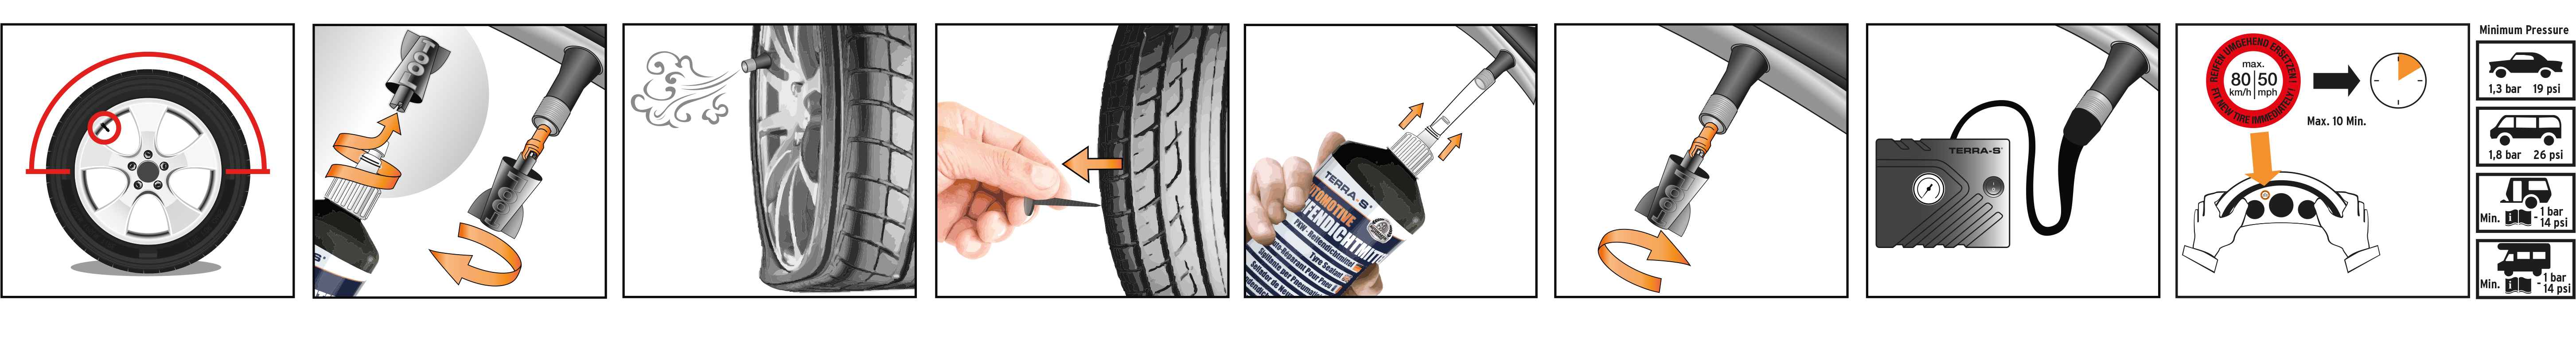 TERRA-S Mobil Tyre Repair Kit Instructions